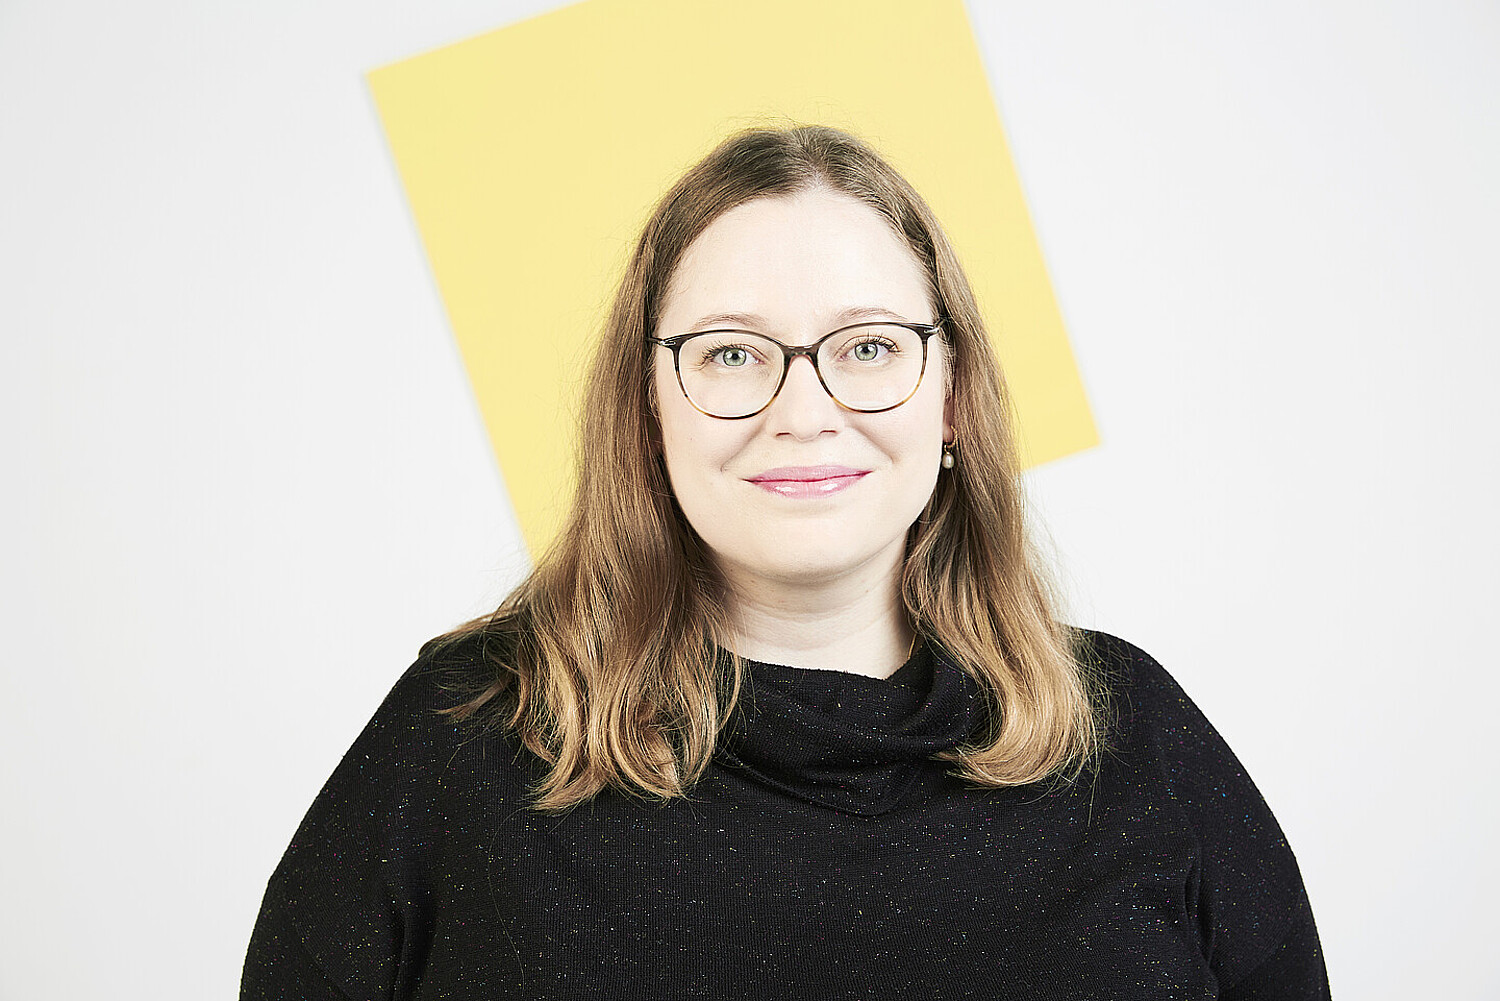 Porträt von Katharina Weitz vor einer quadratischen gelben Fläche